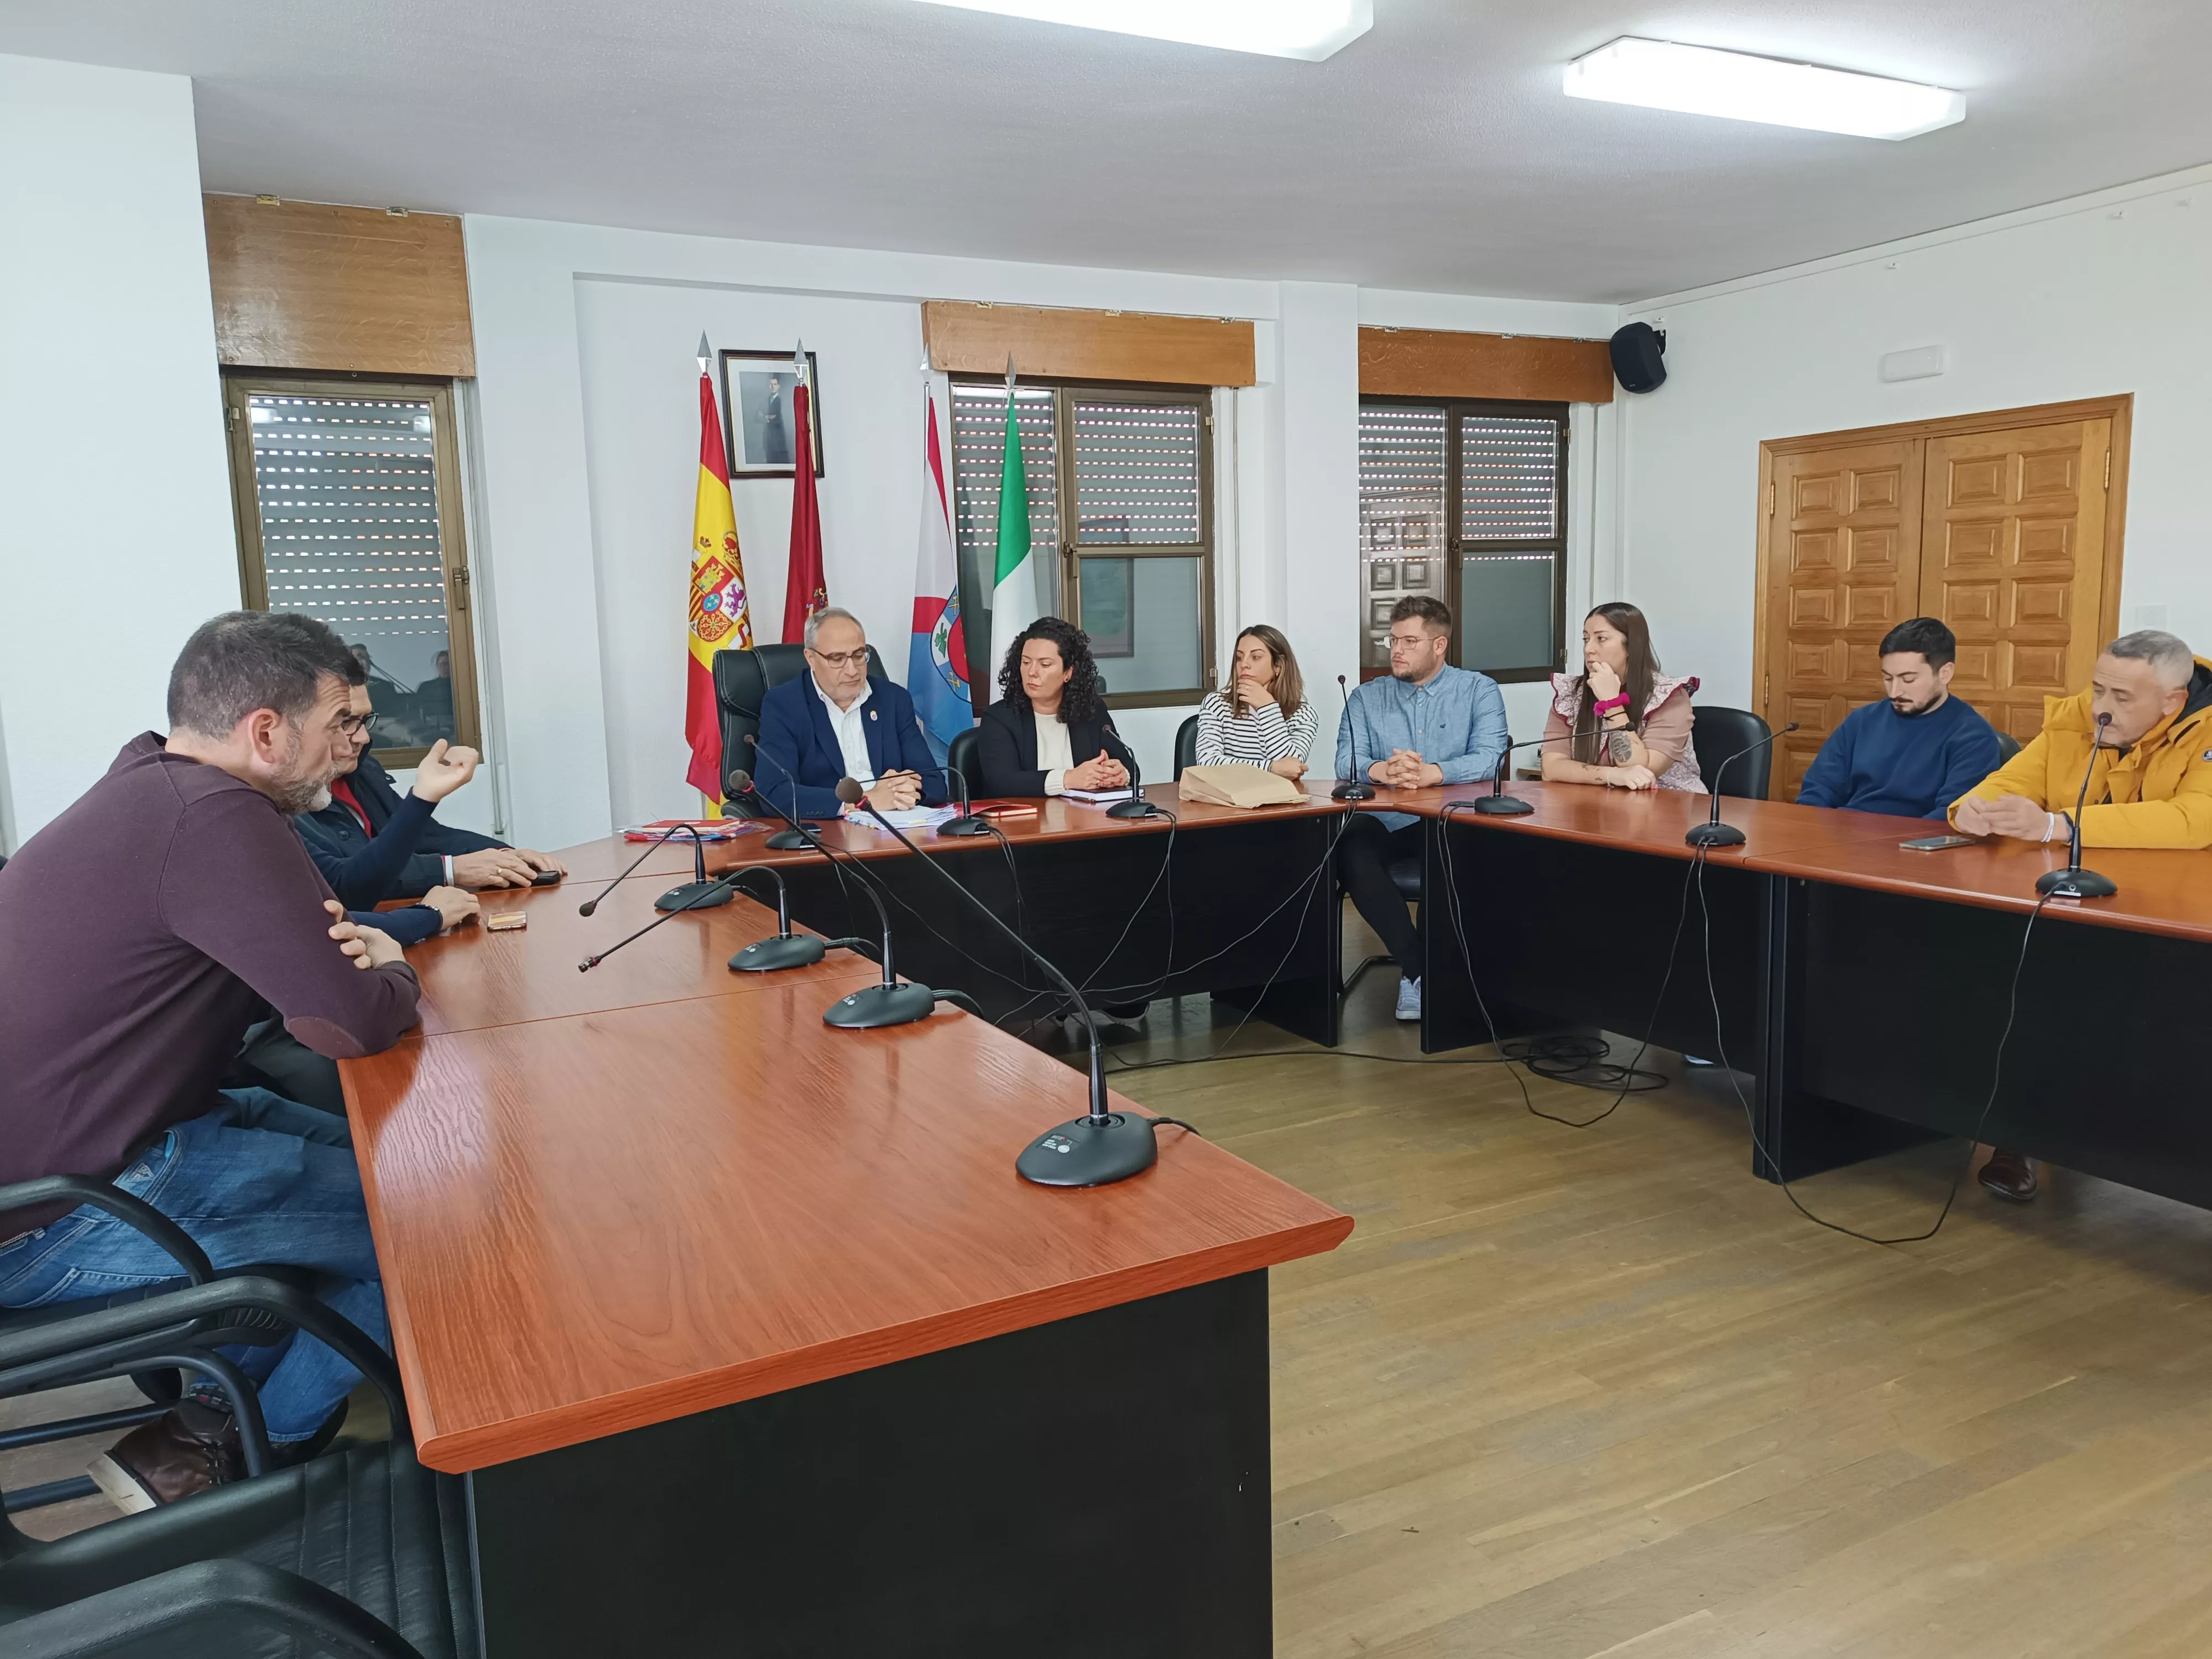 Visita institucional del Consejo del Bierzo a Cacabelos (2)